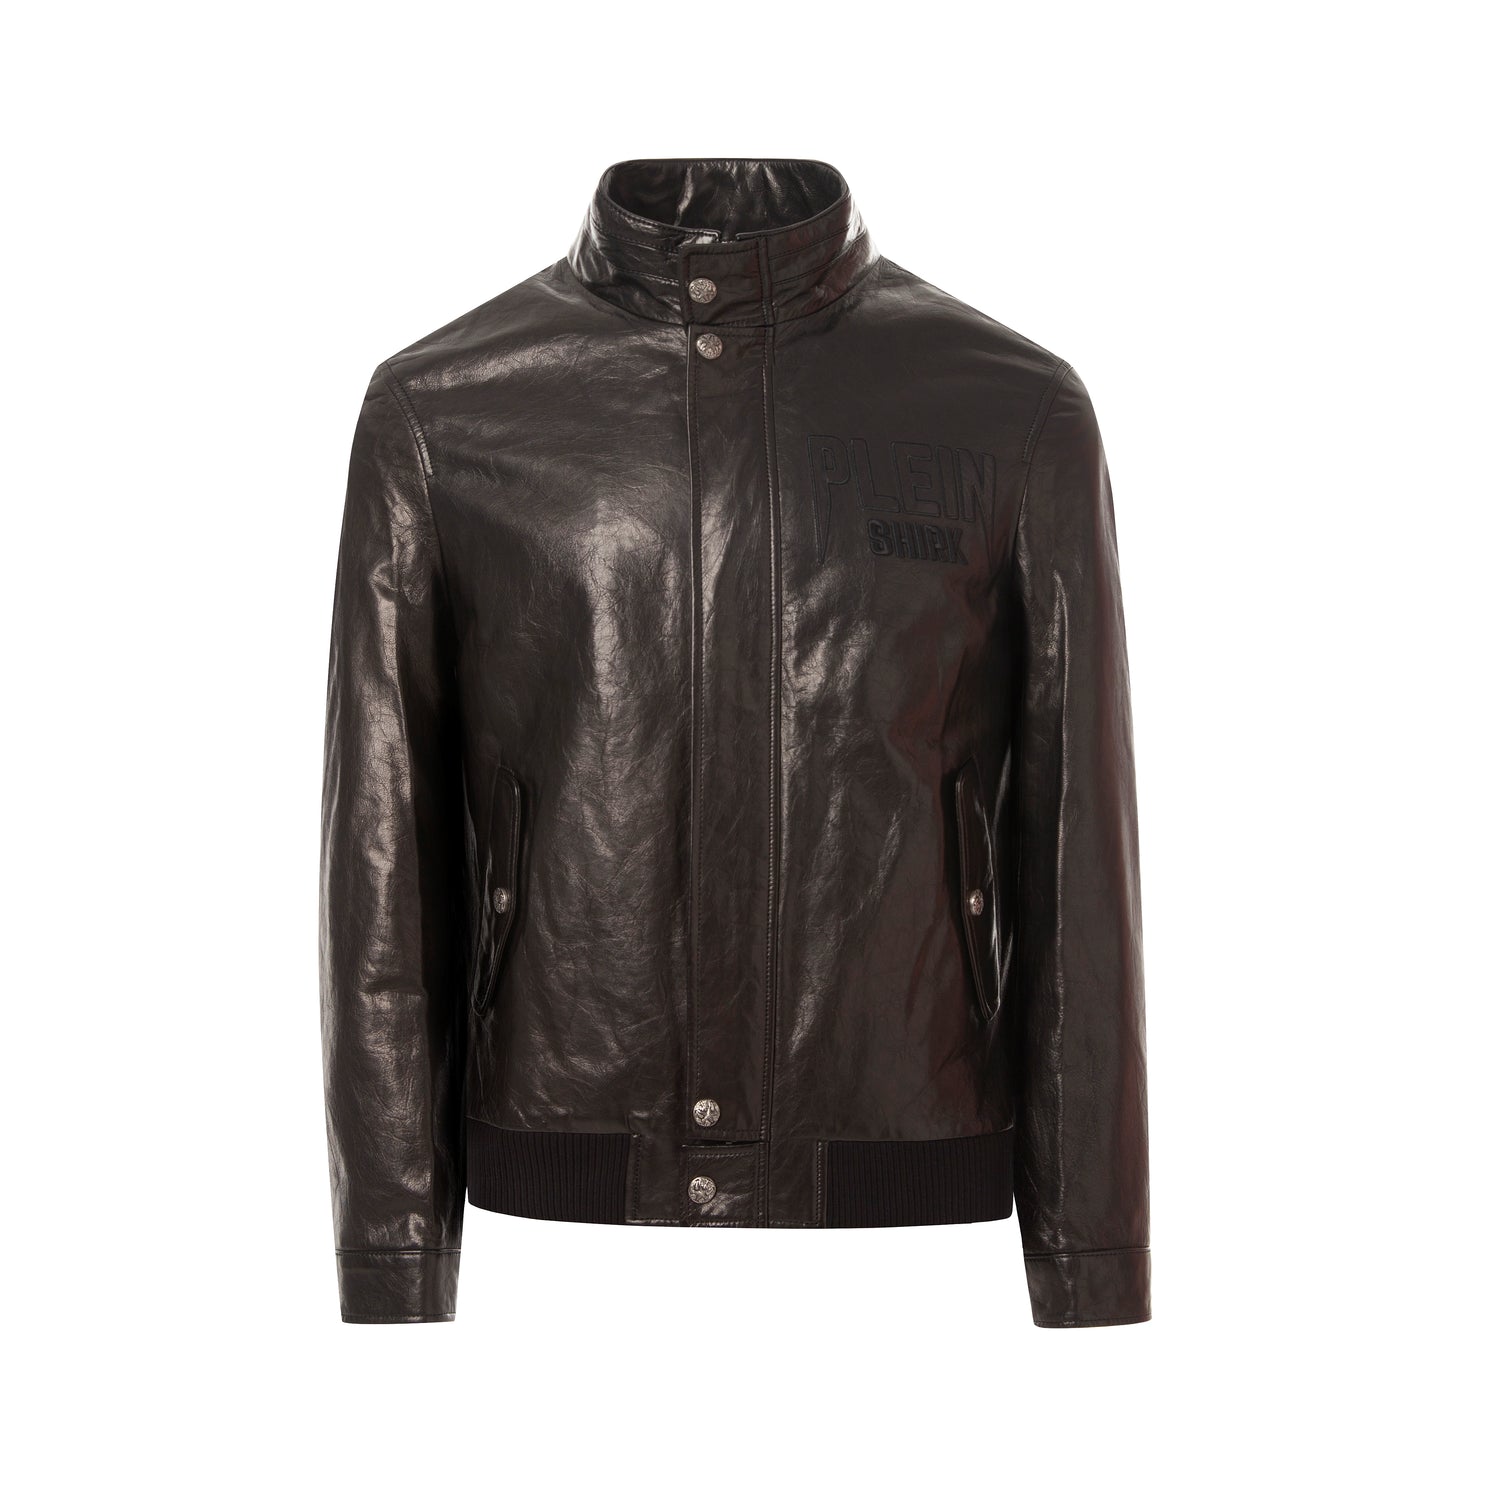 Top Basic Black Bomber Leather Jacket | PalaLeather